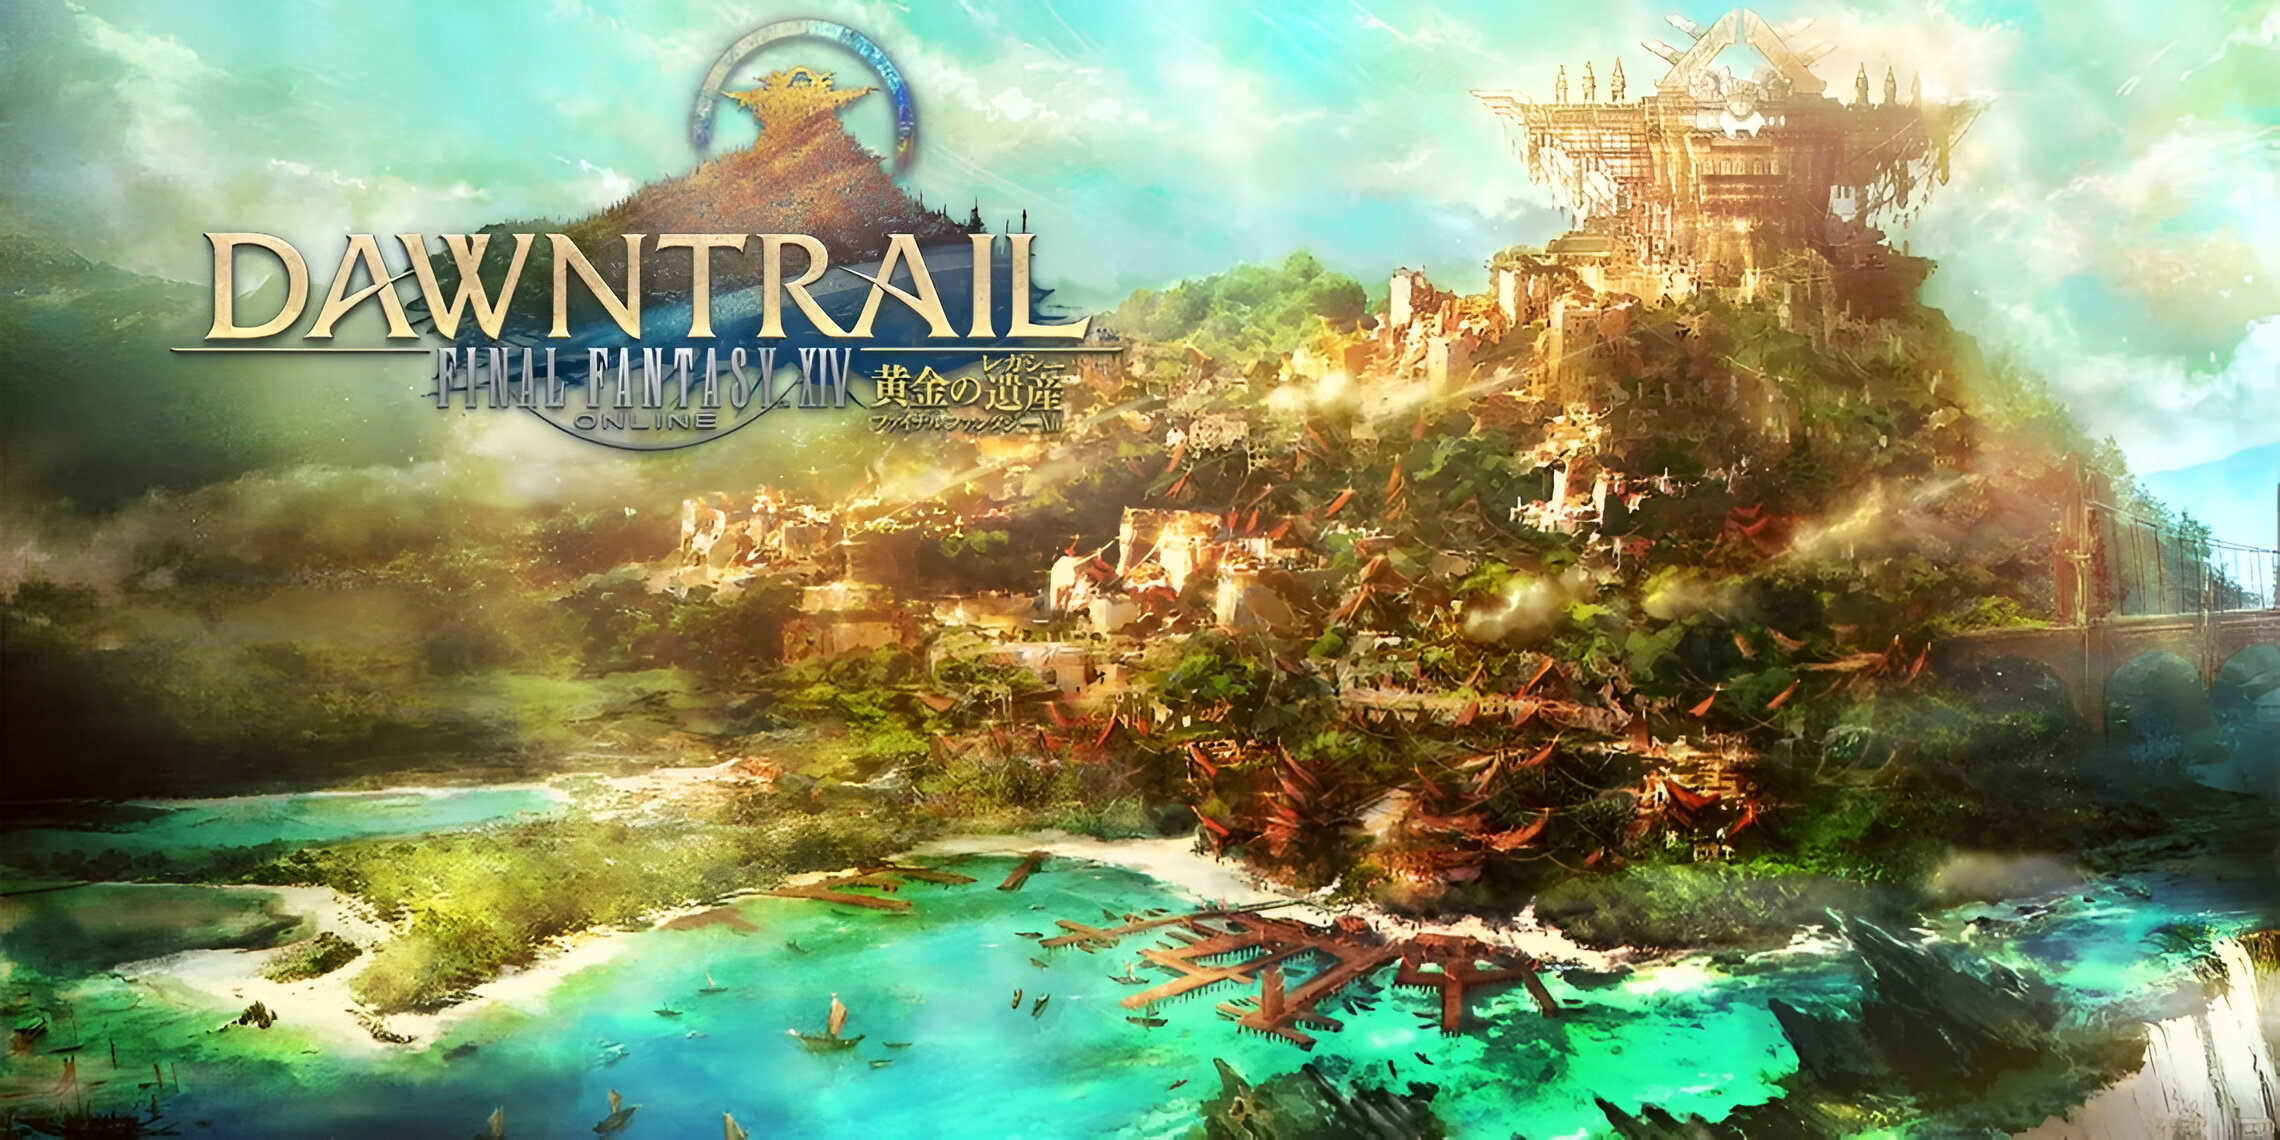 Final Fantasy 14 giảm giá trước ngày Dawntrail ra mắt